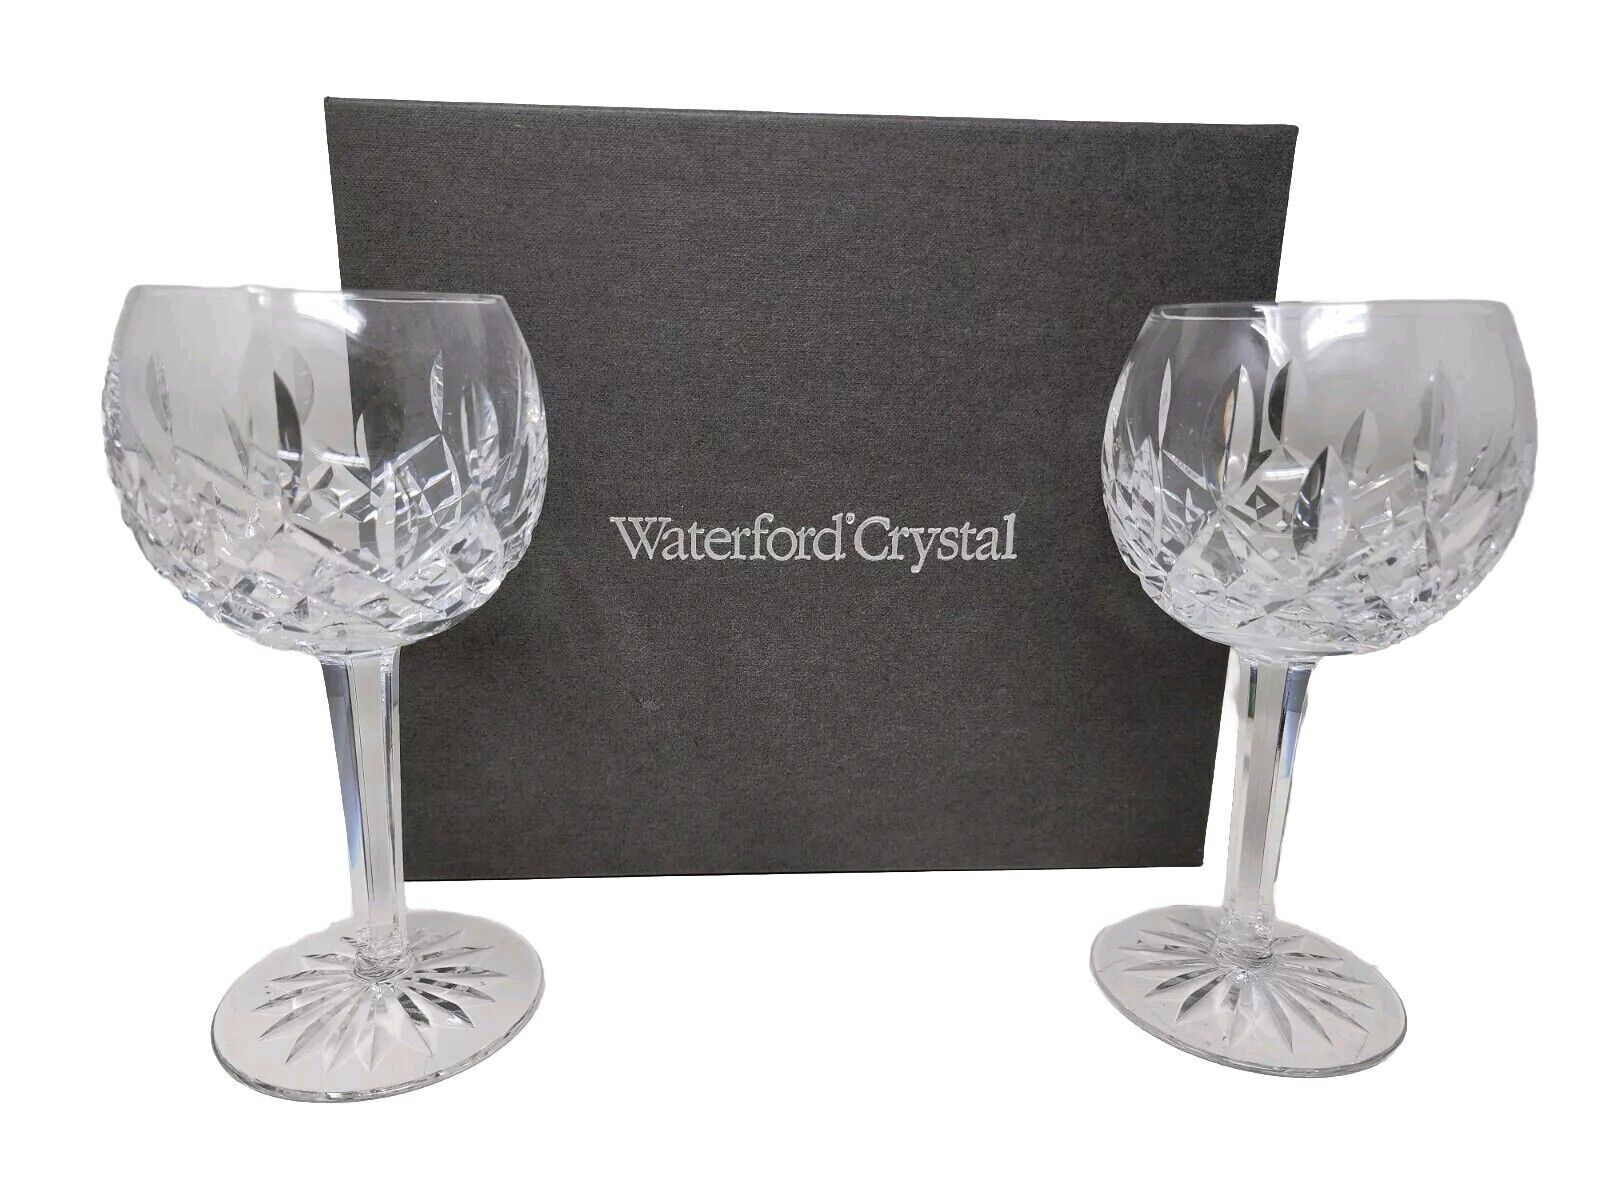 Pair Of Waterford Crystal Lismore Balloon Wine Glasses Original Packaging